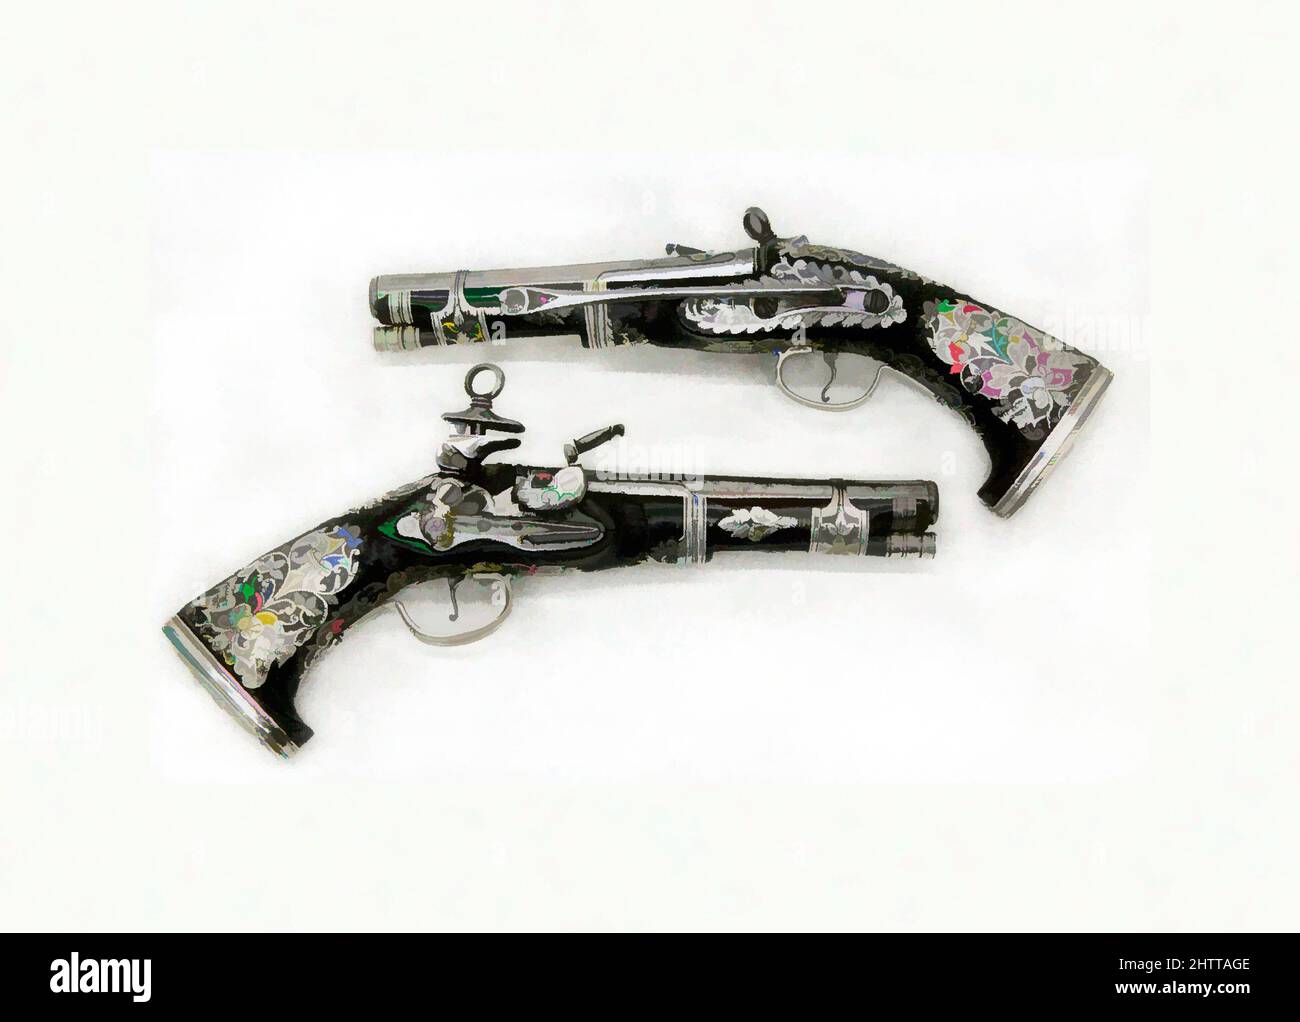 Arte ispirata da Miquelet Flintlock Pistols, datata 1757, spagnolo coloniale, probabilmente Messico, acciaio, Legno (leguminosae familiare), argento, L.: 10 7/8 poll. (27,5 cm); L. di barile: 6" (15,2 cm);L.: 10 5/8" (27,2 cm); L. di barile: 6" (15,2 cm), armi da fuoco-Guns-Miquelet, firmato, opere classiche modernizzate da Artotop con un tuffo di modernità. Forme, colore e valore, impatto visivo accattivante sulle emozioni artistiche attraverso la libertà delle opere d'arte in modo contemporaneo. Un messaggio senza tempo che persegue una nuova direzione selvaggiamente creativa. Artisti che si rivolgono al supporto digitale e creano l'NFT Artotop Foto Stock